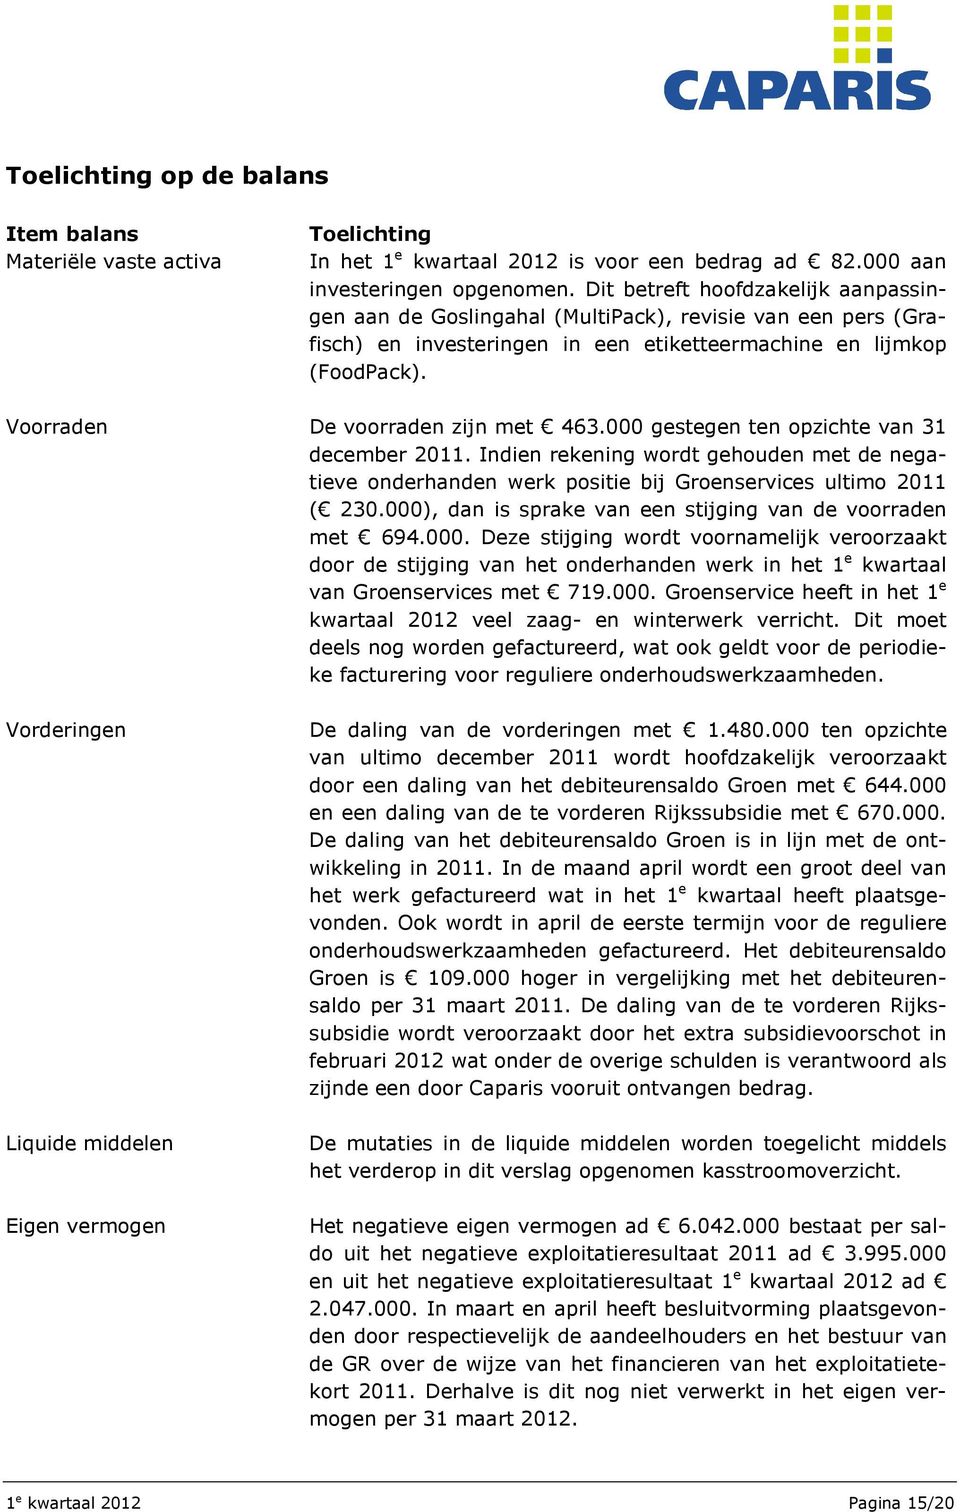 Voorraden De voorraden zijn met 463.000 gestegen ten opzichte van 31 december 2011. Indien rekening wordt gehouden met de negatieve onderhanden werk positie bij Groenservices ultimo 2011 ( 230.